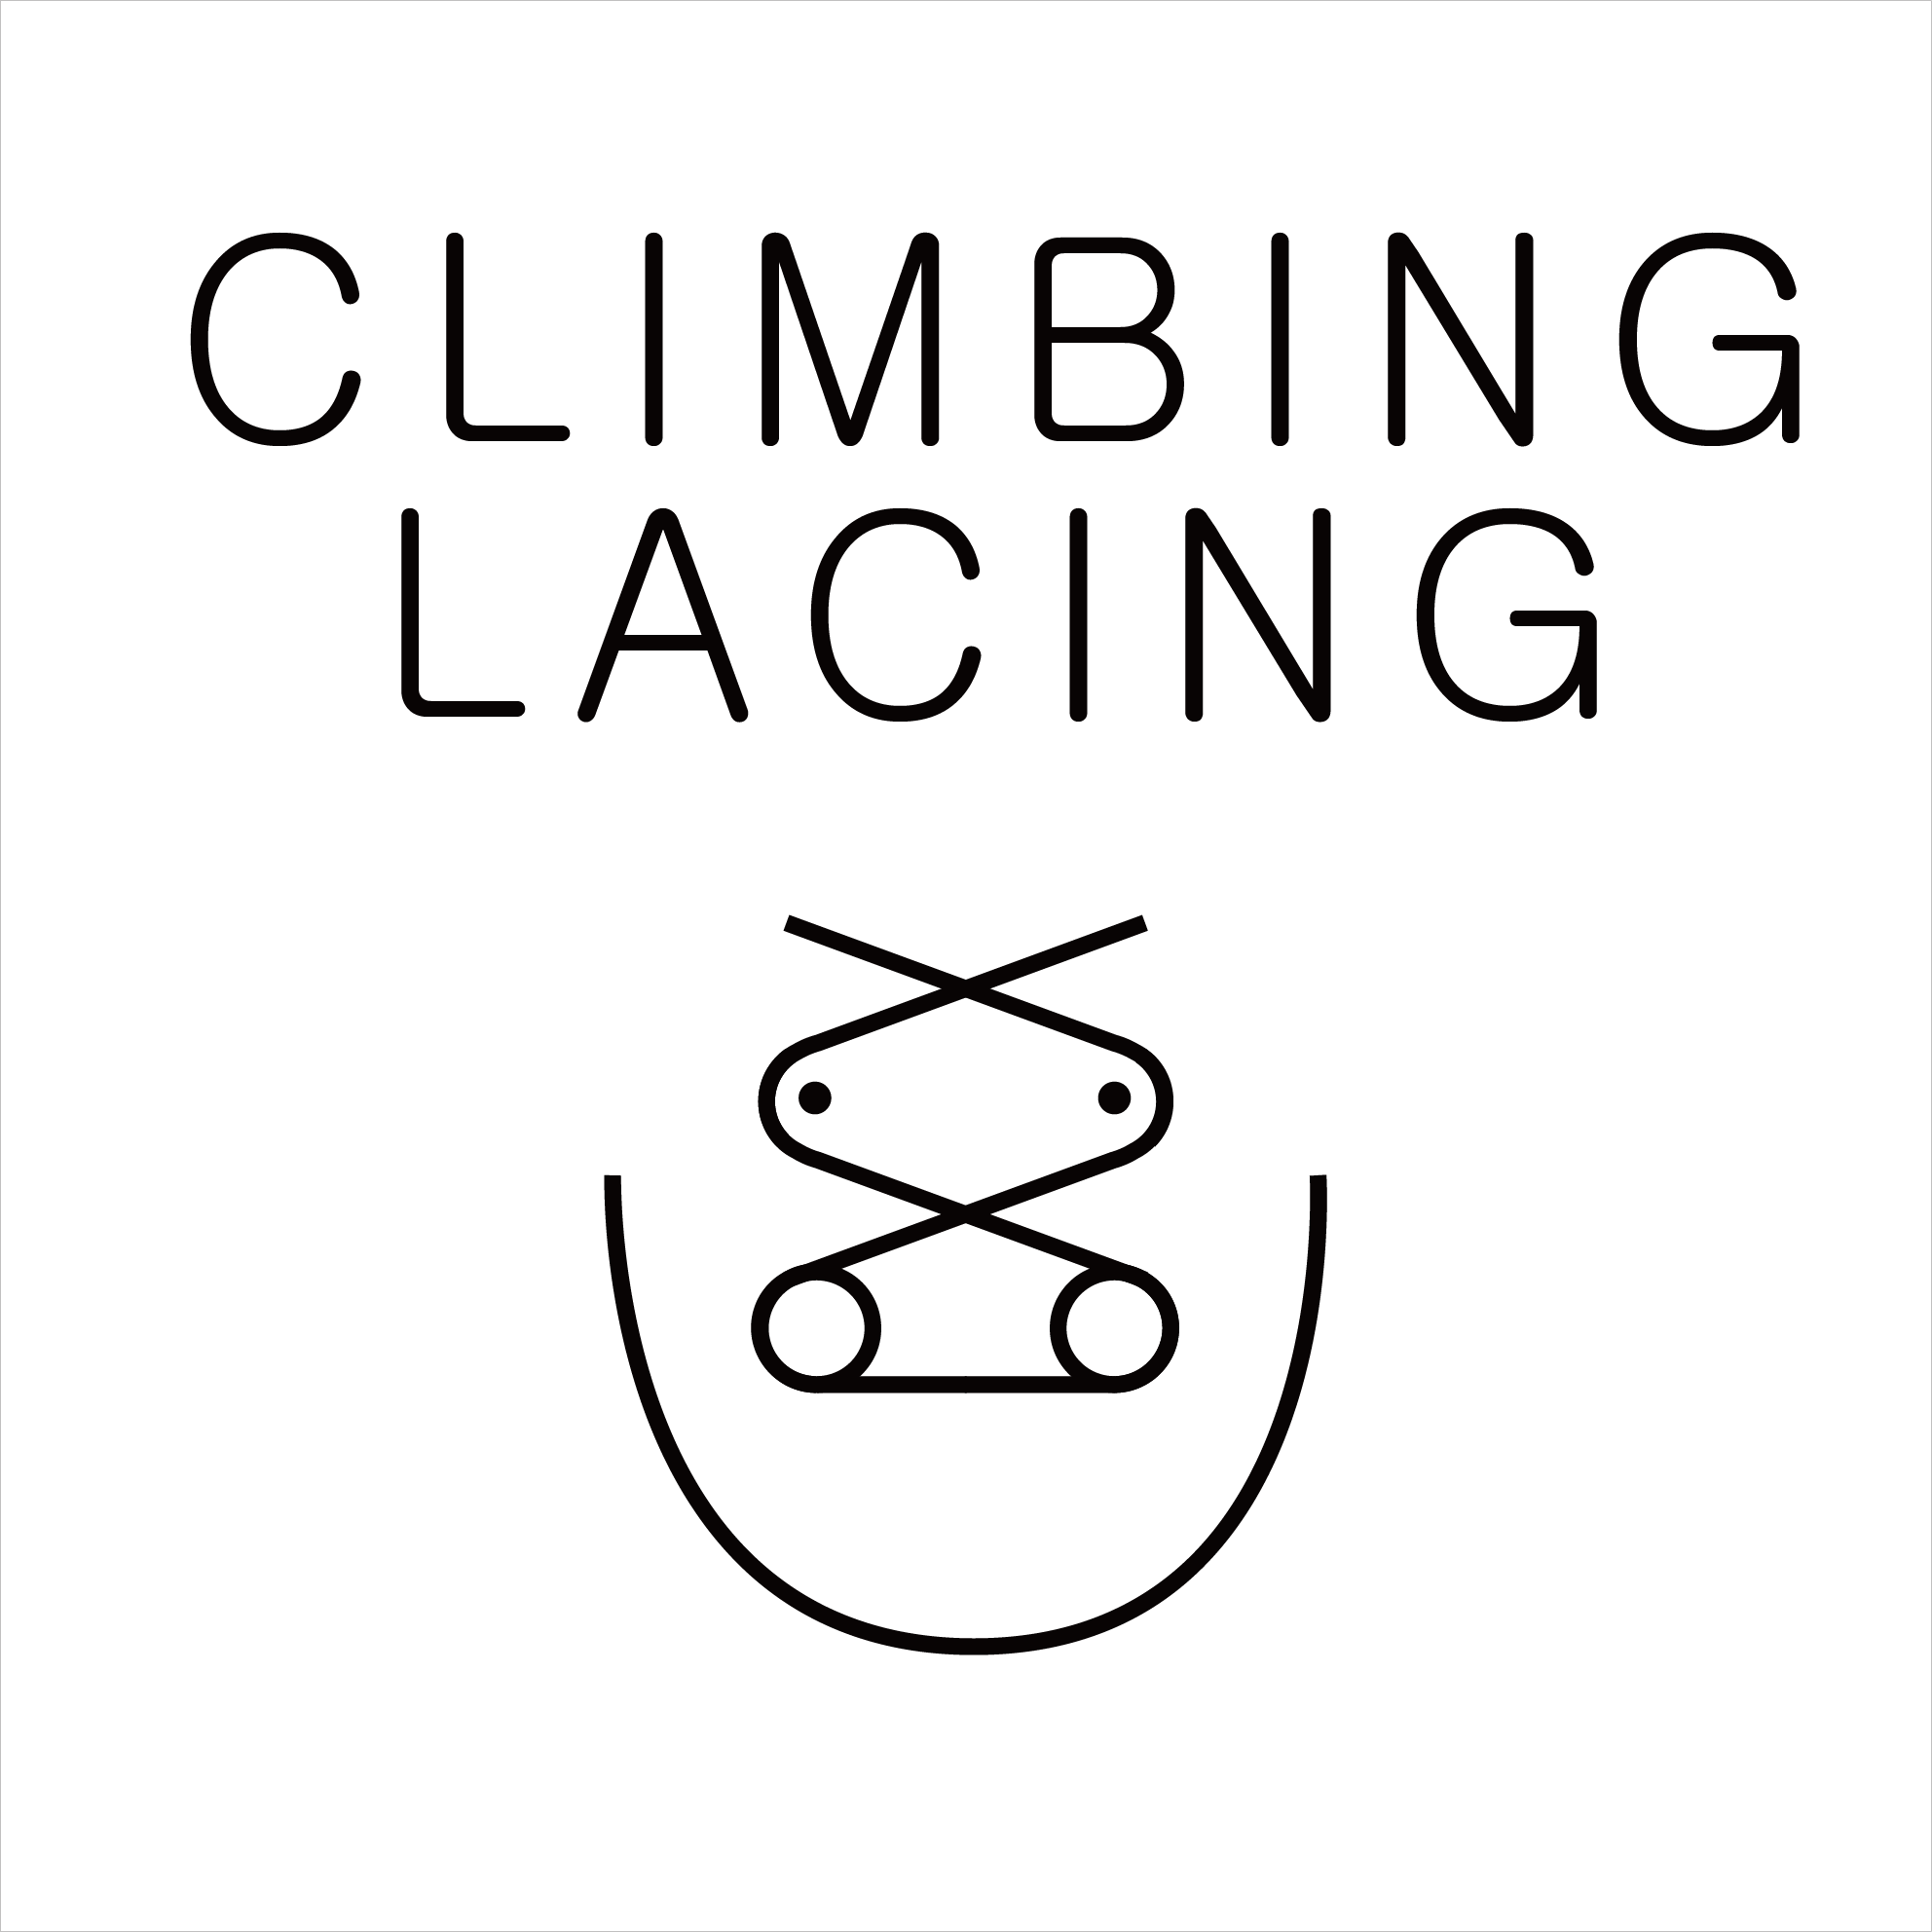 CLIMBING LACING